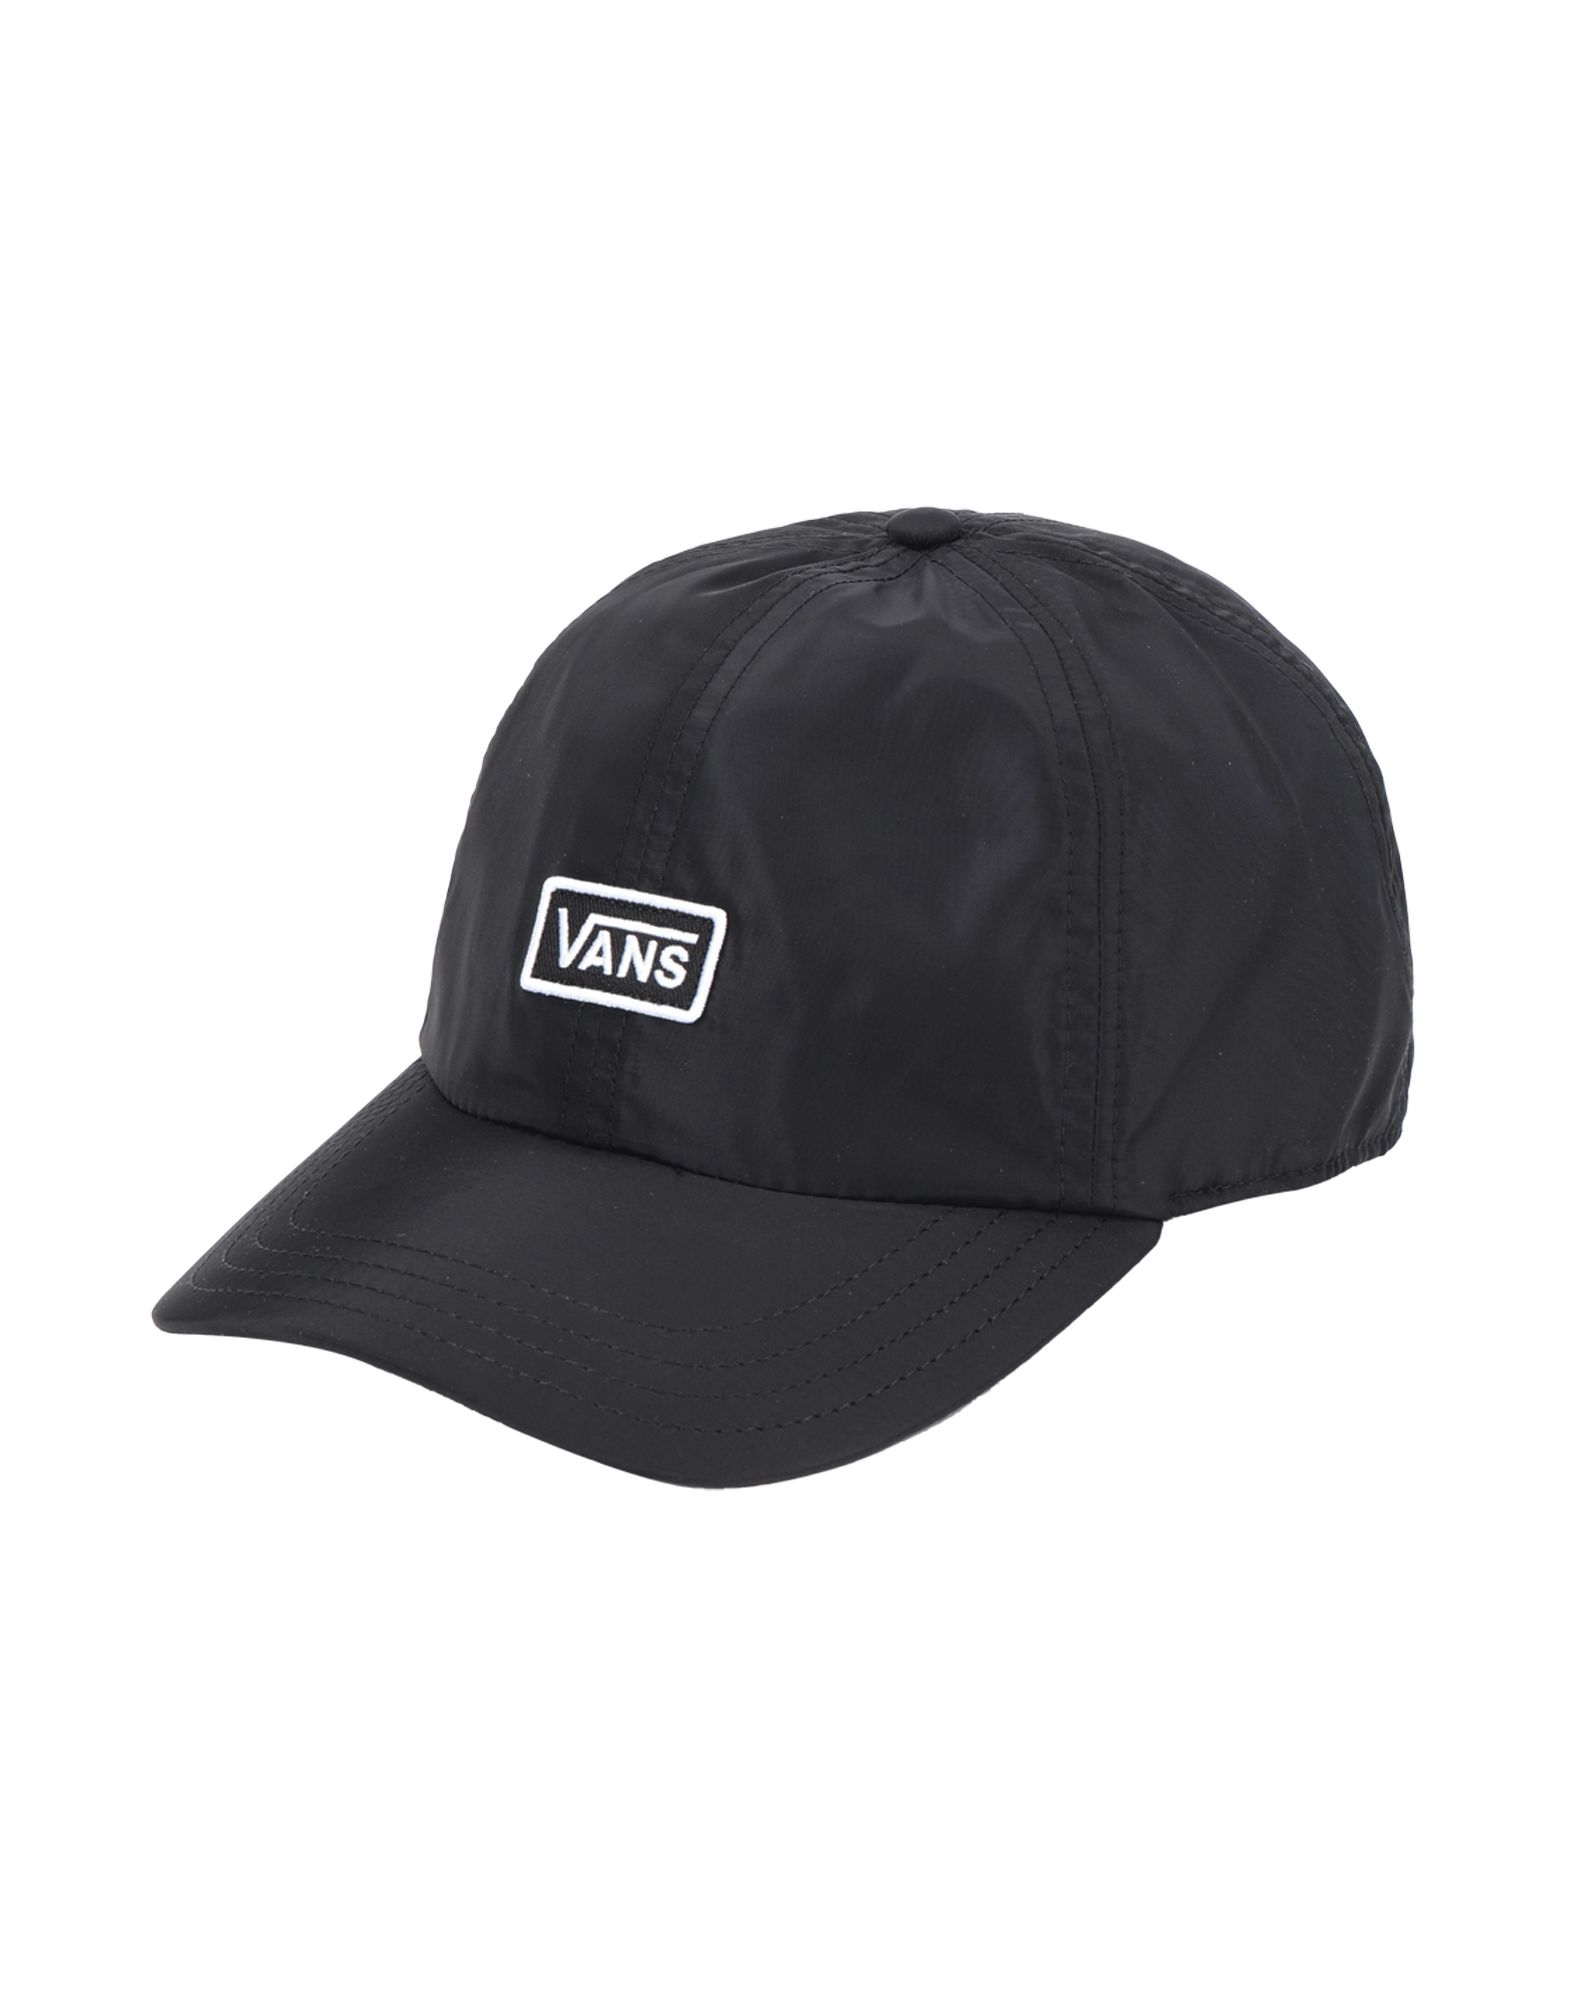 《送料無料》VANS レディース 帽子 ブラック one size ポリエステル 100% WM BOOM BOOM HAT II ROSE CLOUD